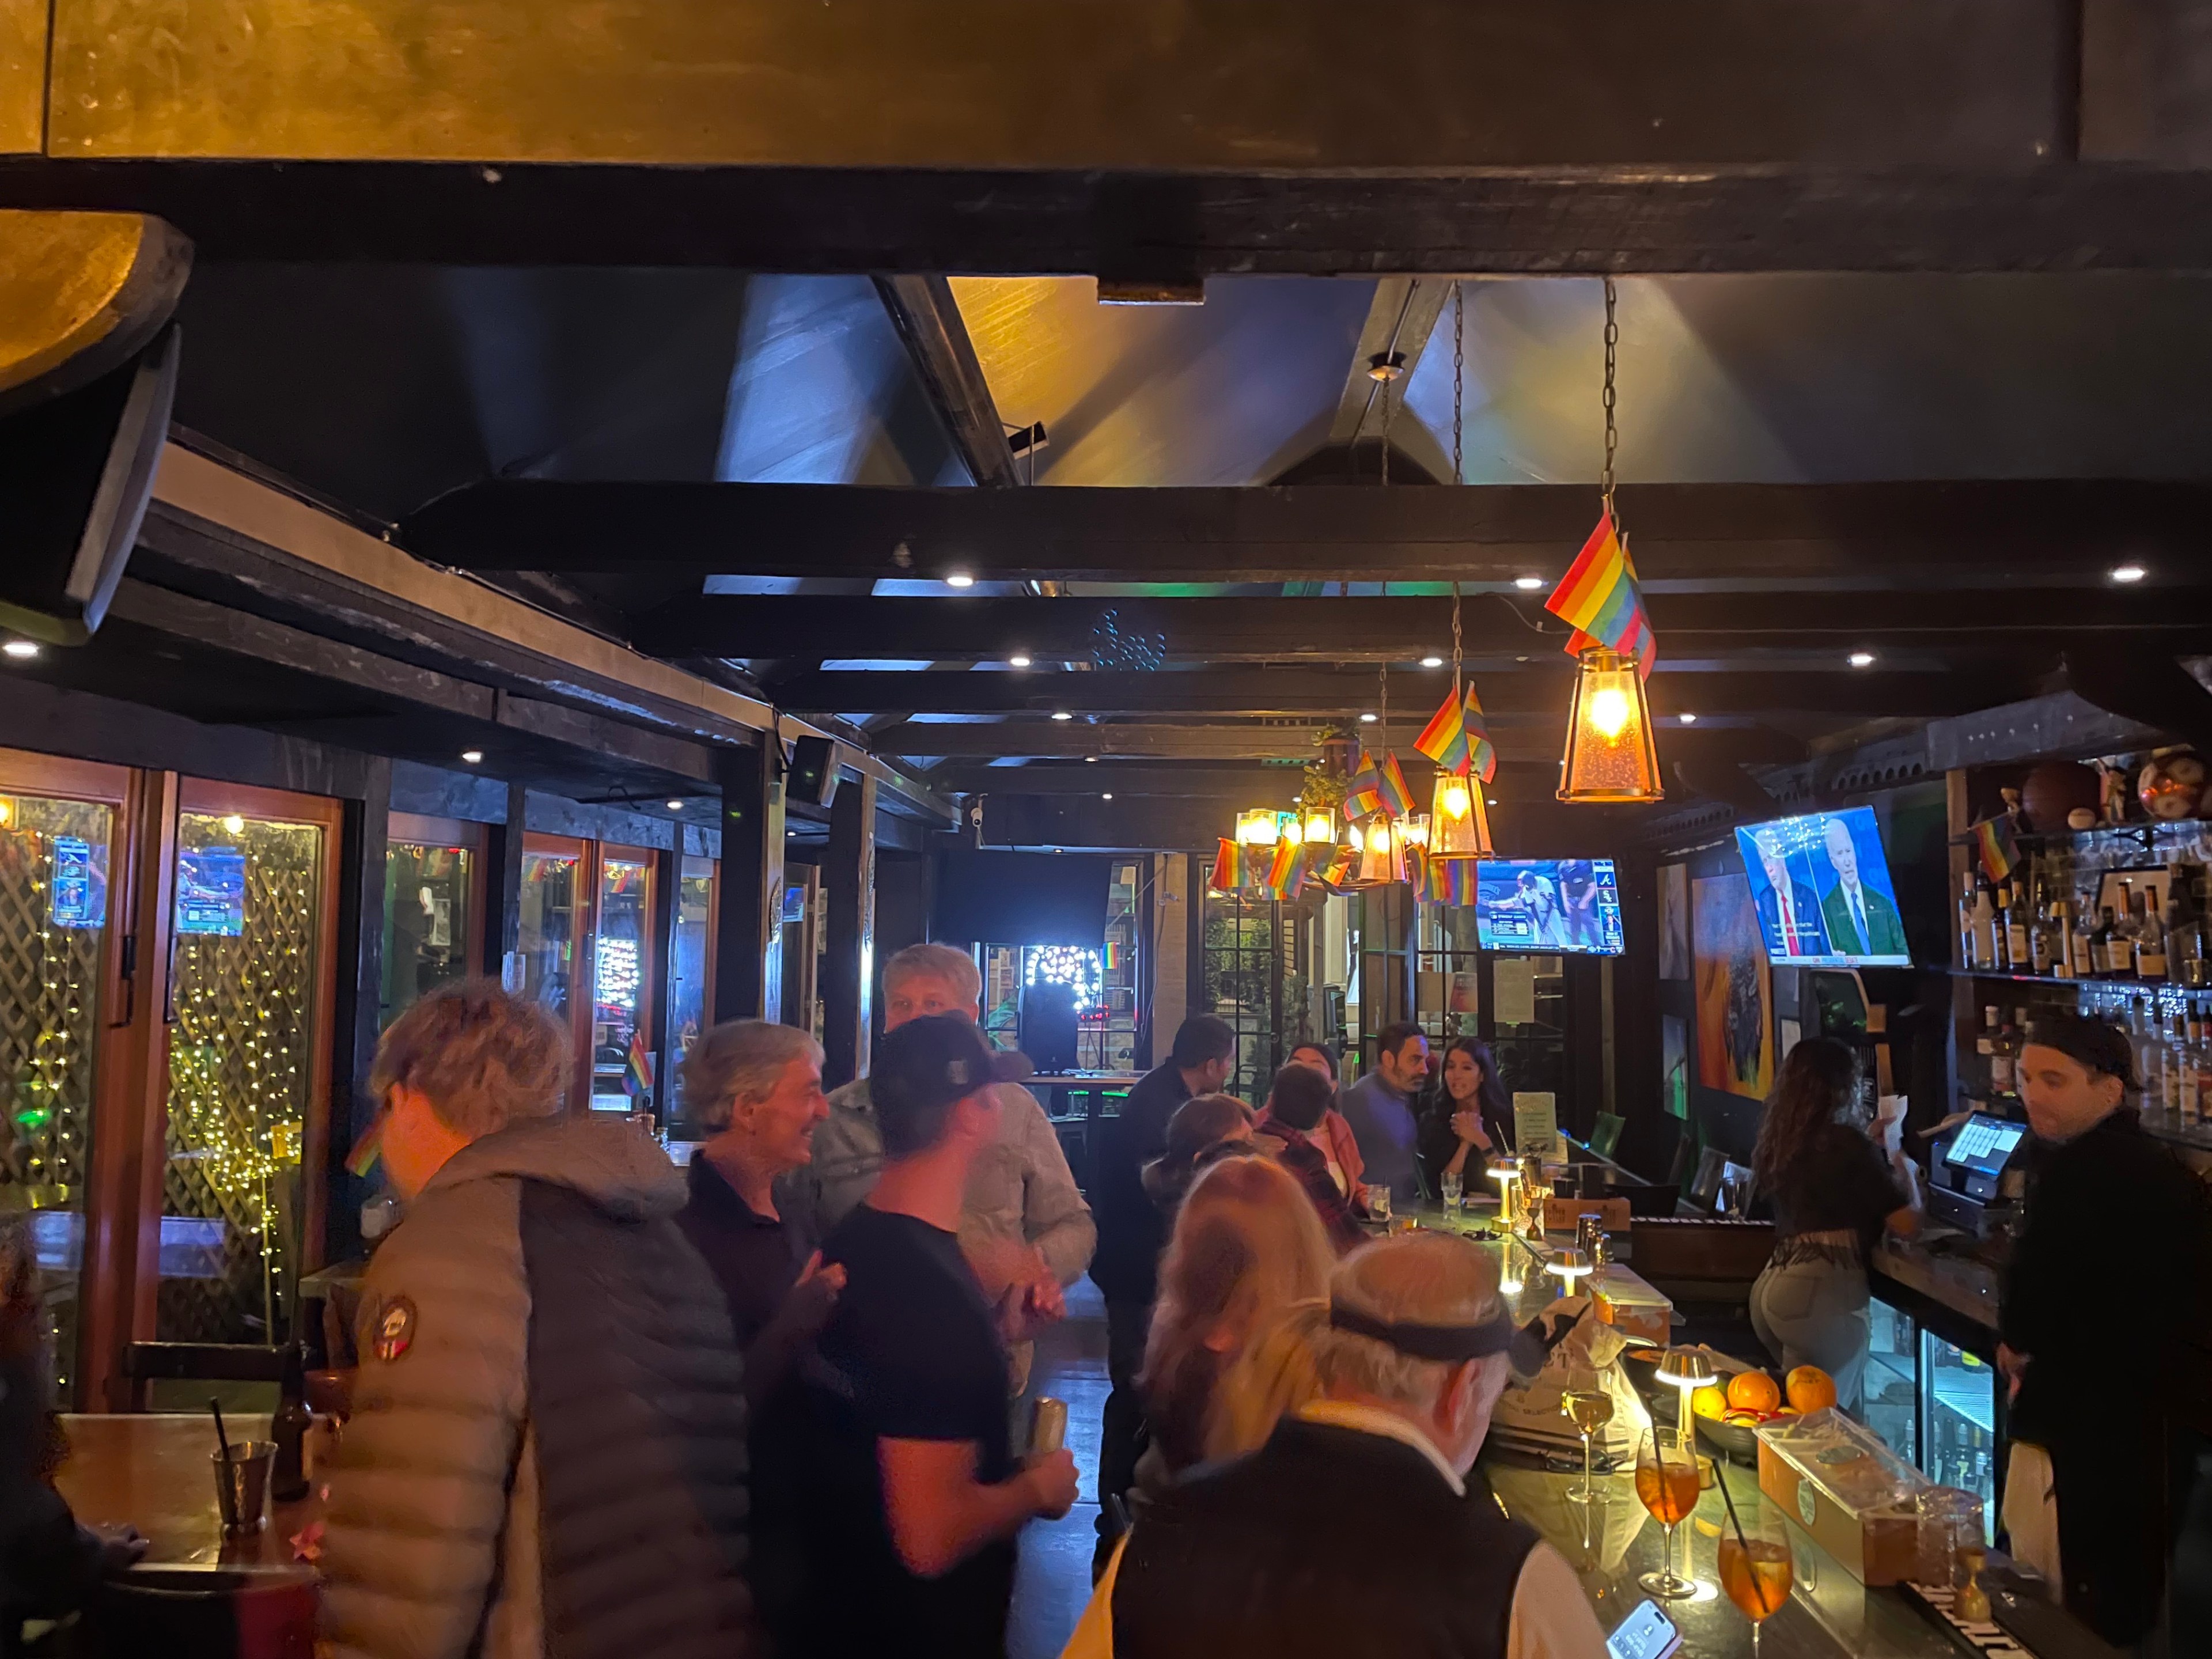 People mingle inside a bar.